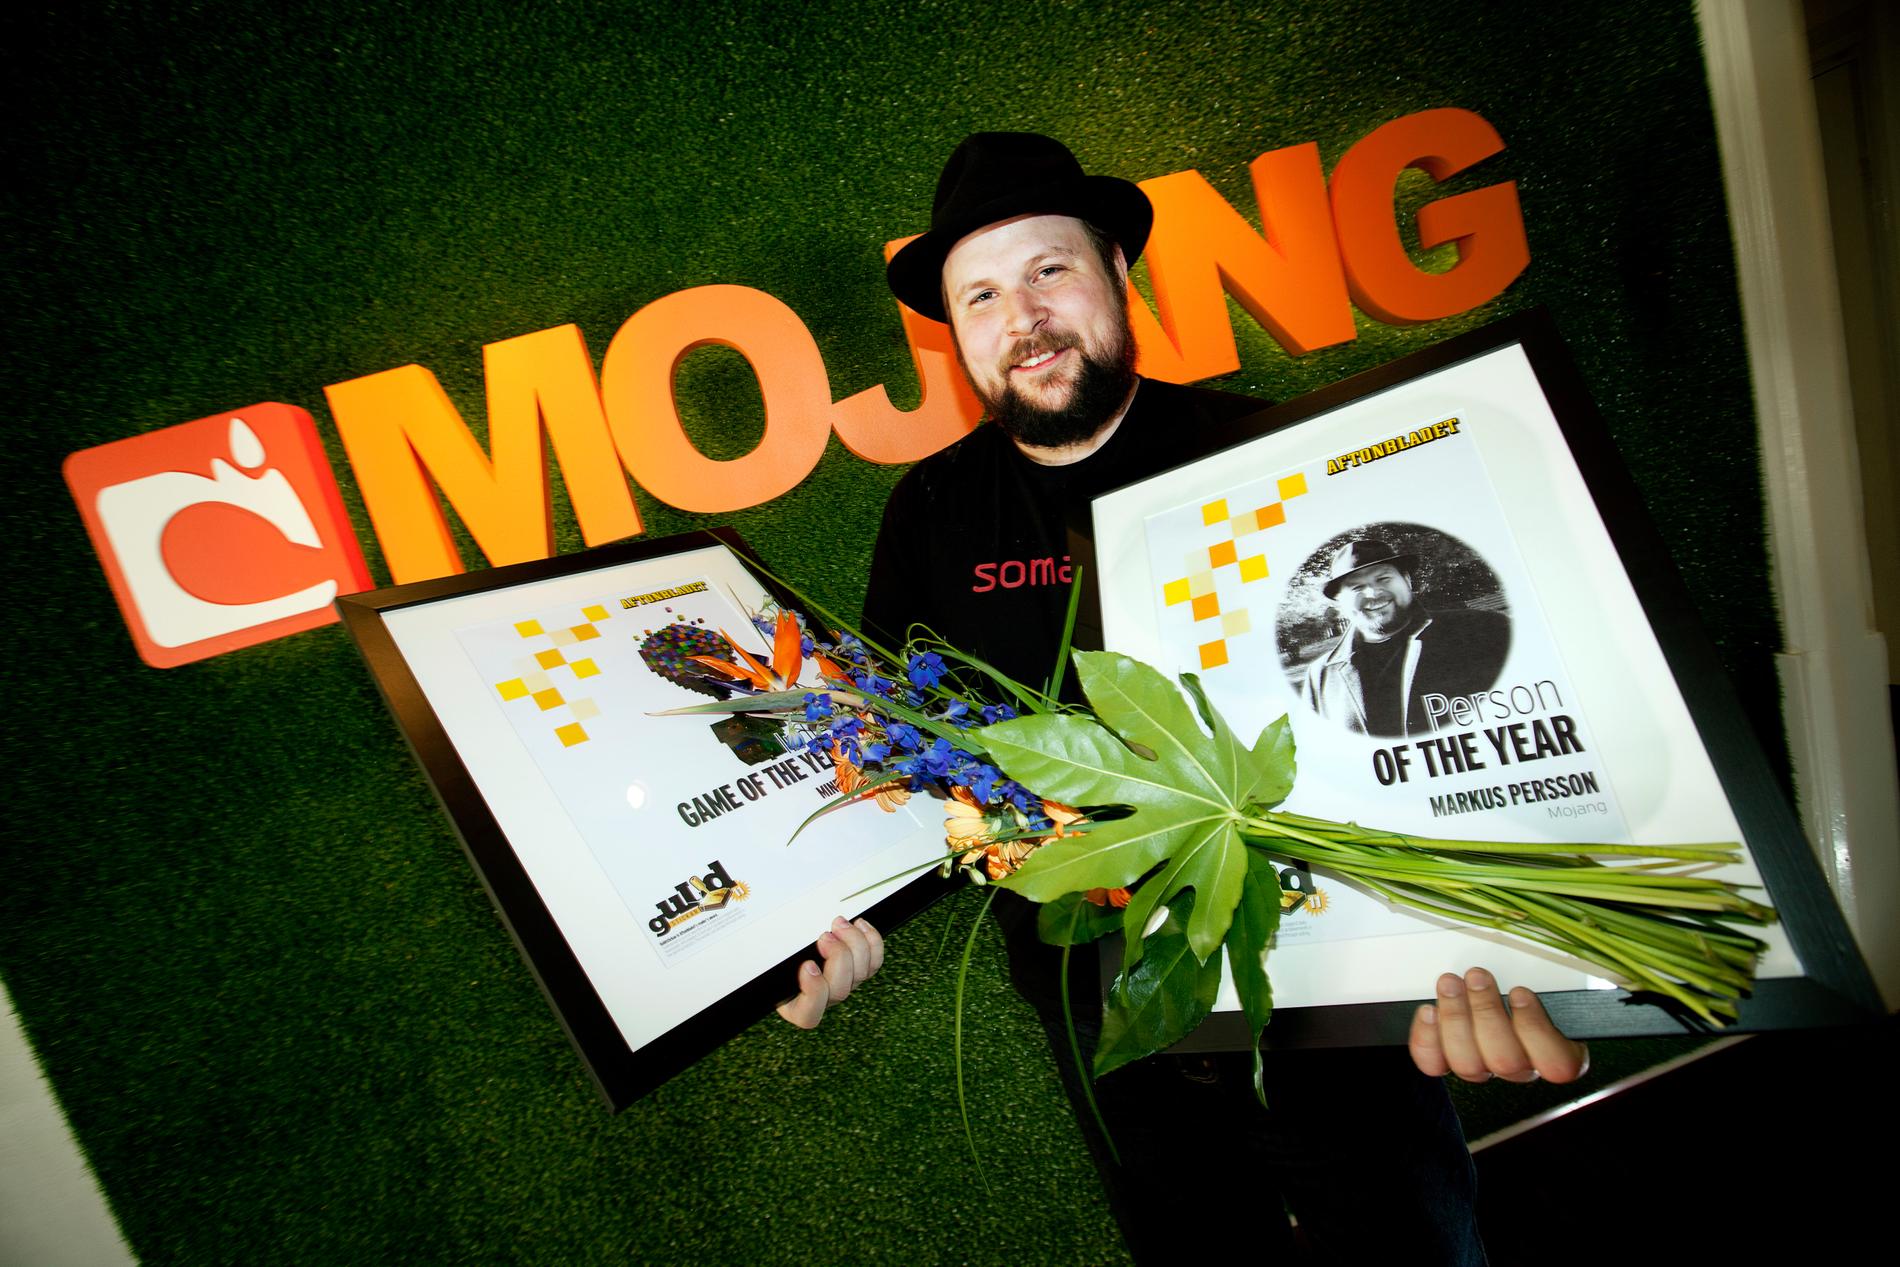 MARKUS MOJANG PRISADES Nöjesbladets läsare röstade 2010 fram Markus Persson till Årets person i spelvärlden 2010, och "Minecraft" till Årets indiespel.